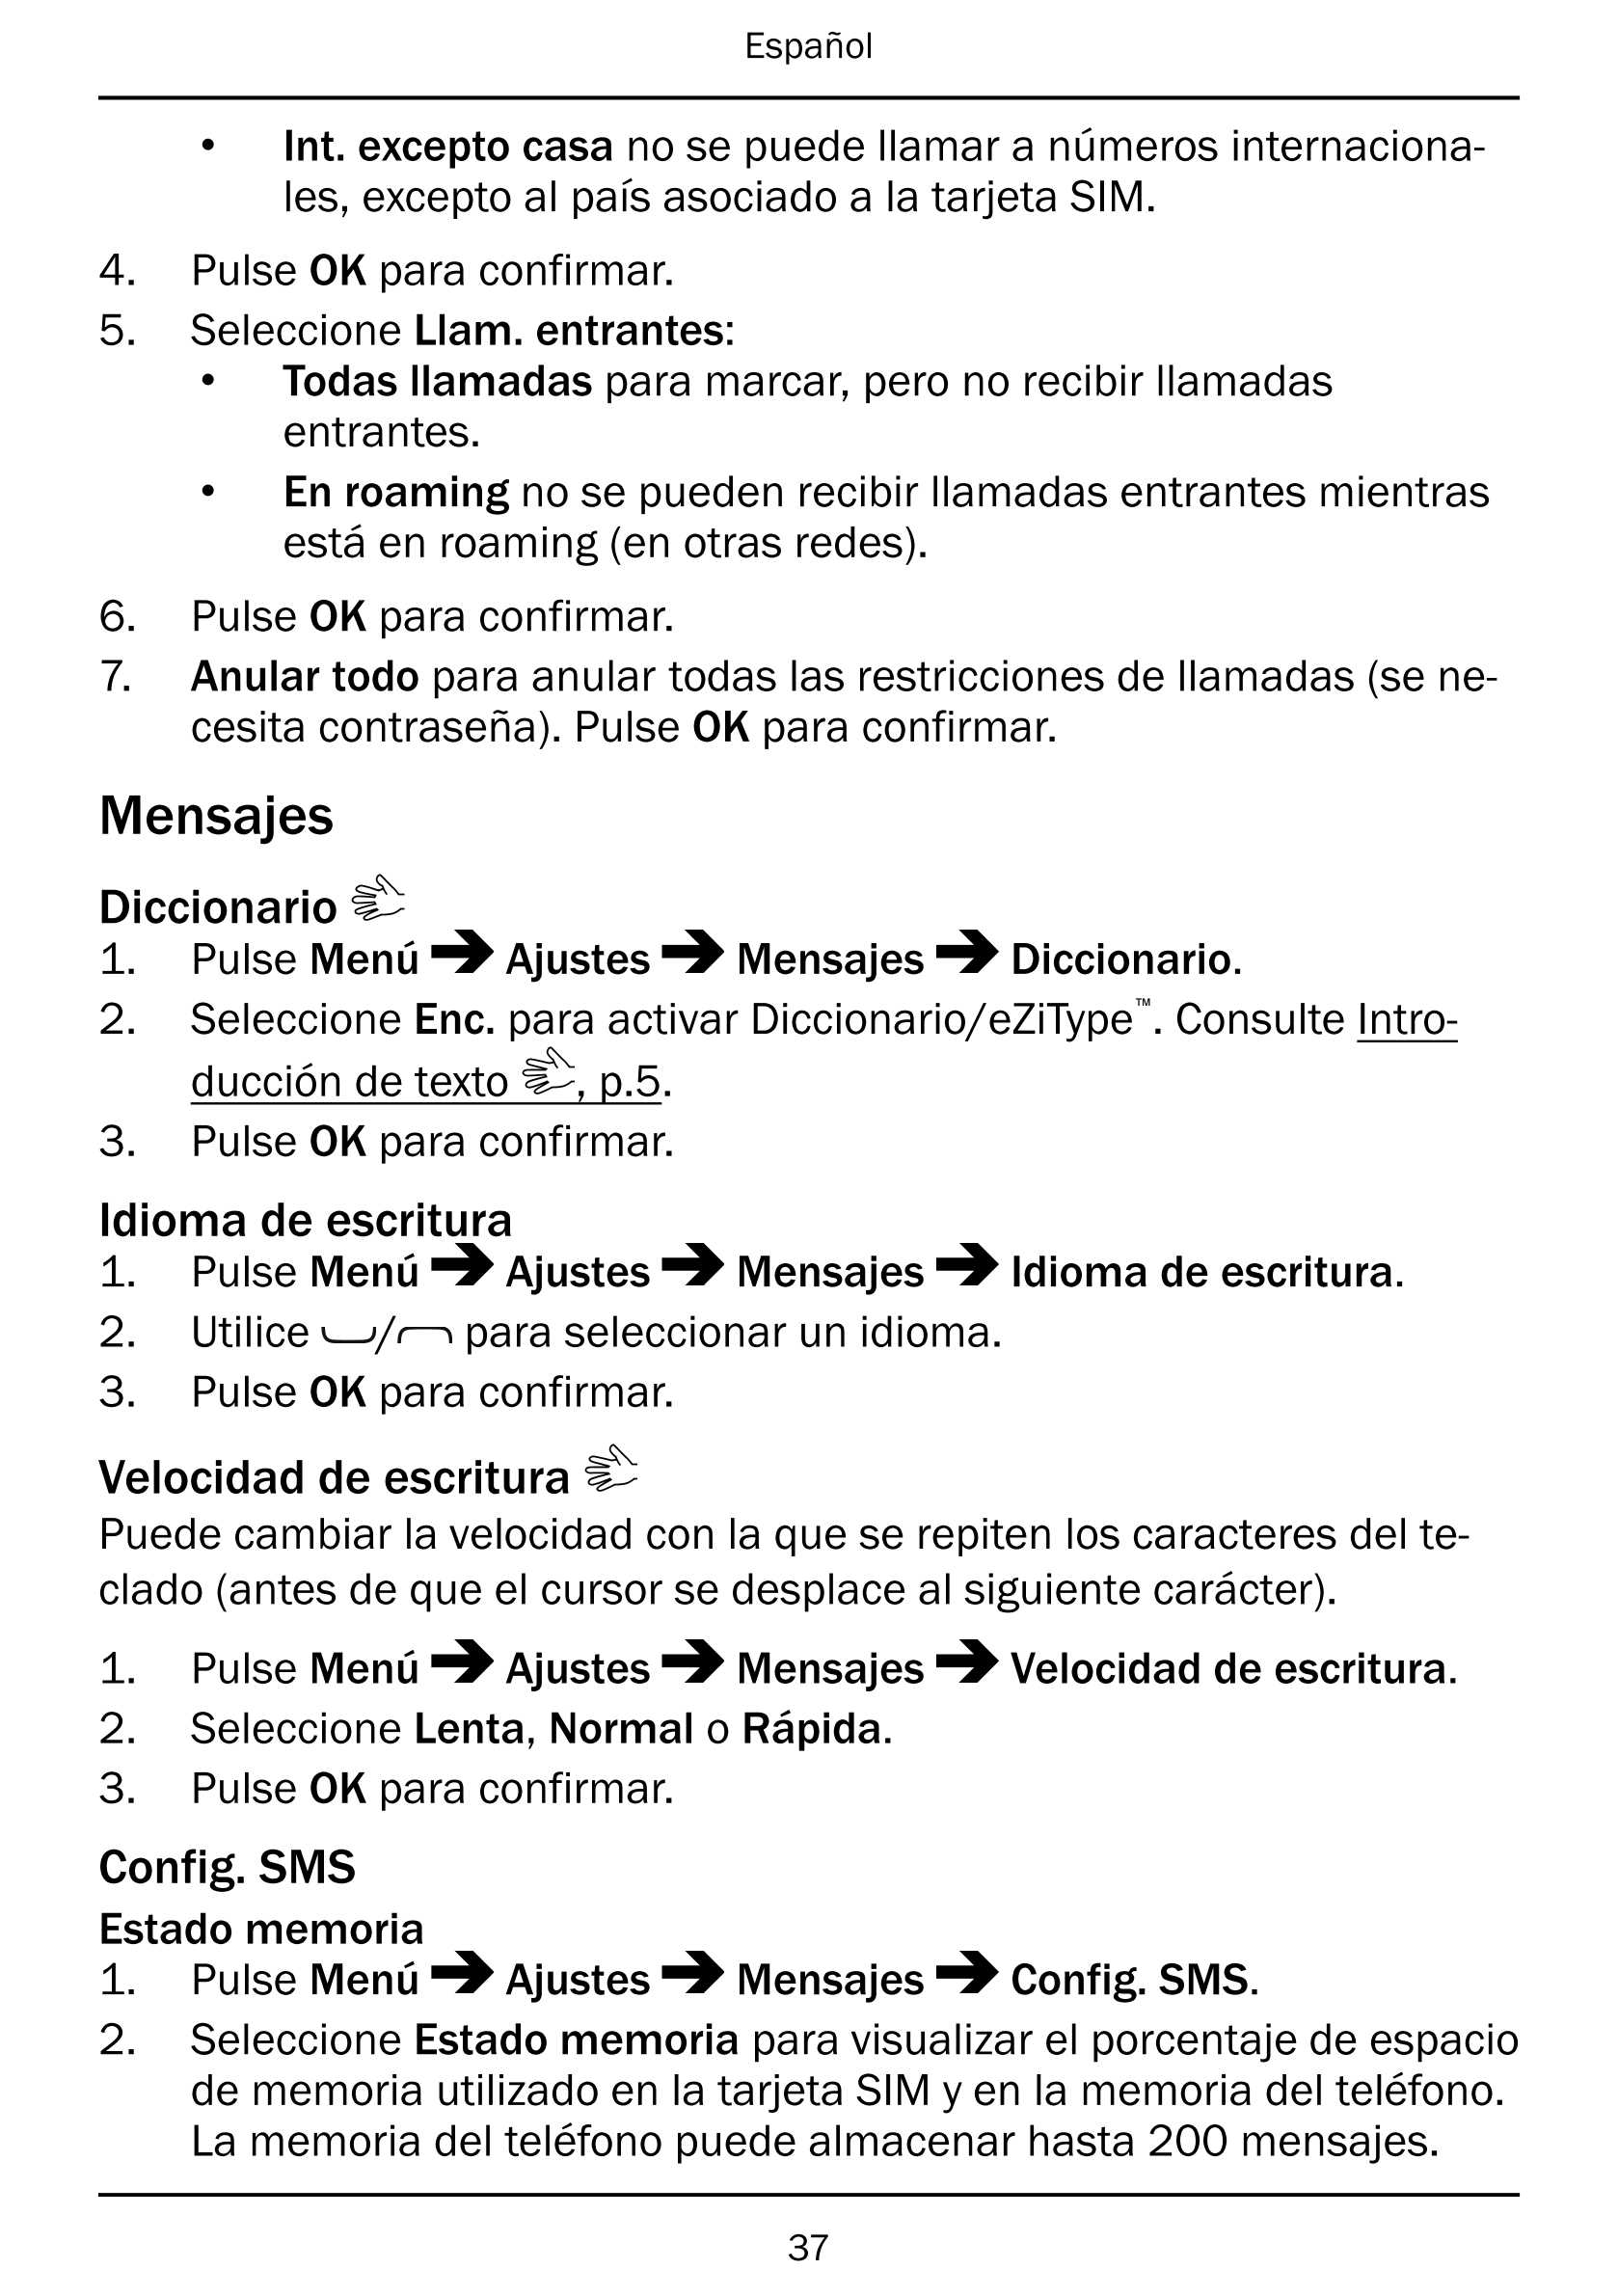 Español
• Int. excepto casa no se puede llamar a números internaciona-
les, excepto al país asociado a la tarjeta SIM.
4.     Pu